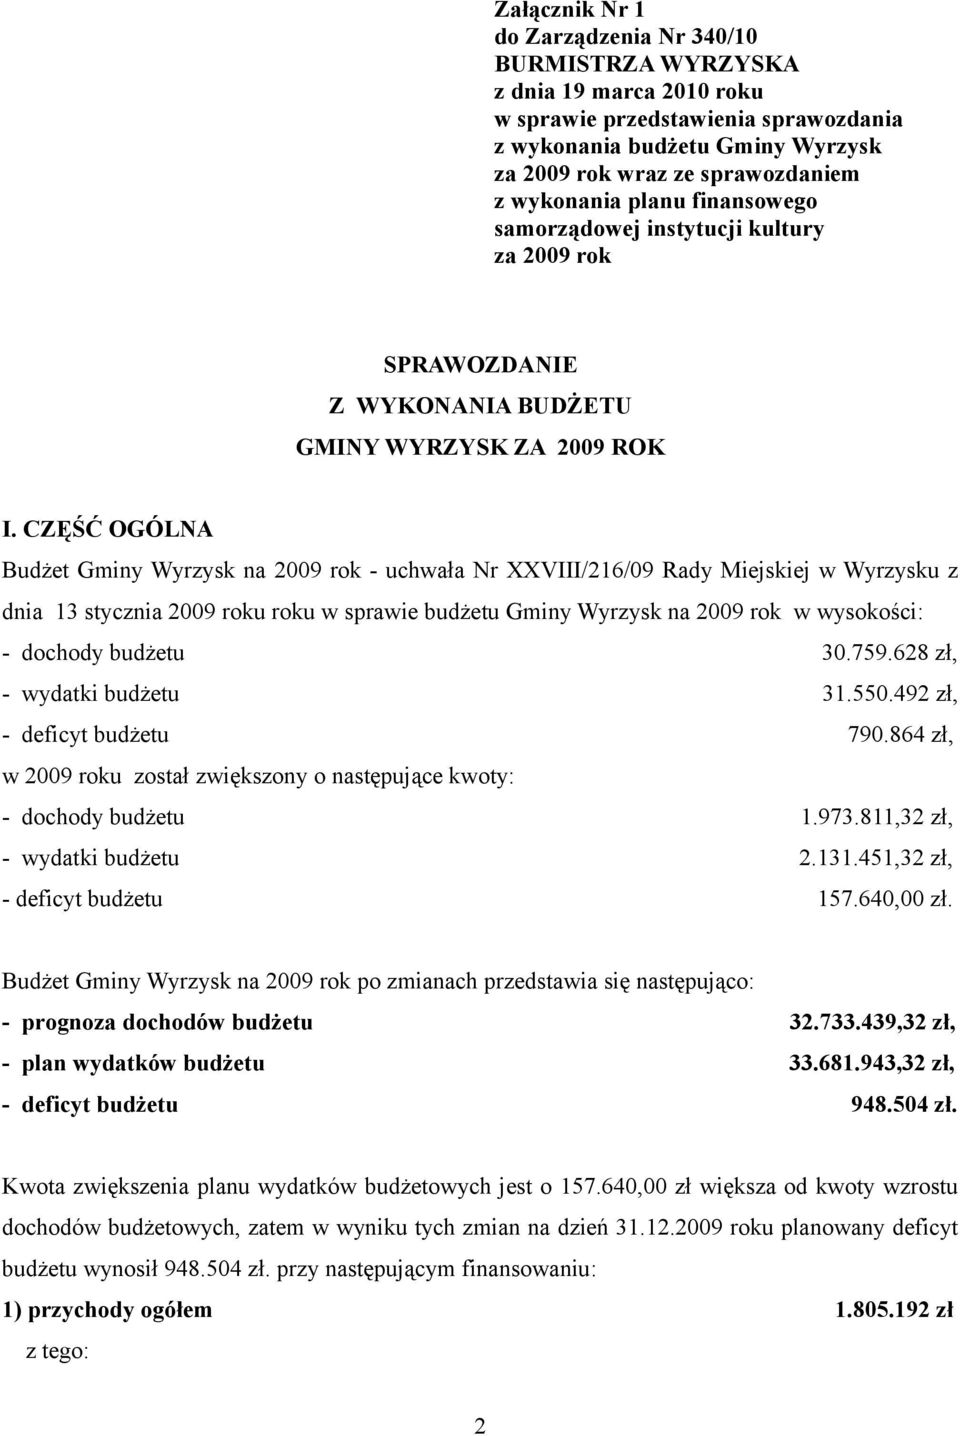 CZĘŚĆ OGÓLNA Budżet Gminy Wyrzysk na 2009 rok - uchwała Nr XXVIII/216/09 Rady Miejskiej w Wyrzysku z dnia 13 stycznia 2009 roku roku w sprawie budżetu Gminy Wyrzysk na 2009 rok w wysokości: - dochody